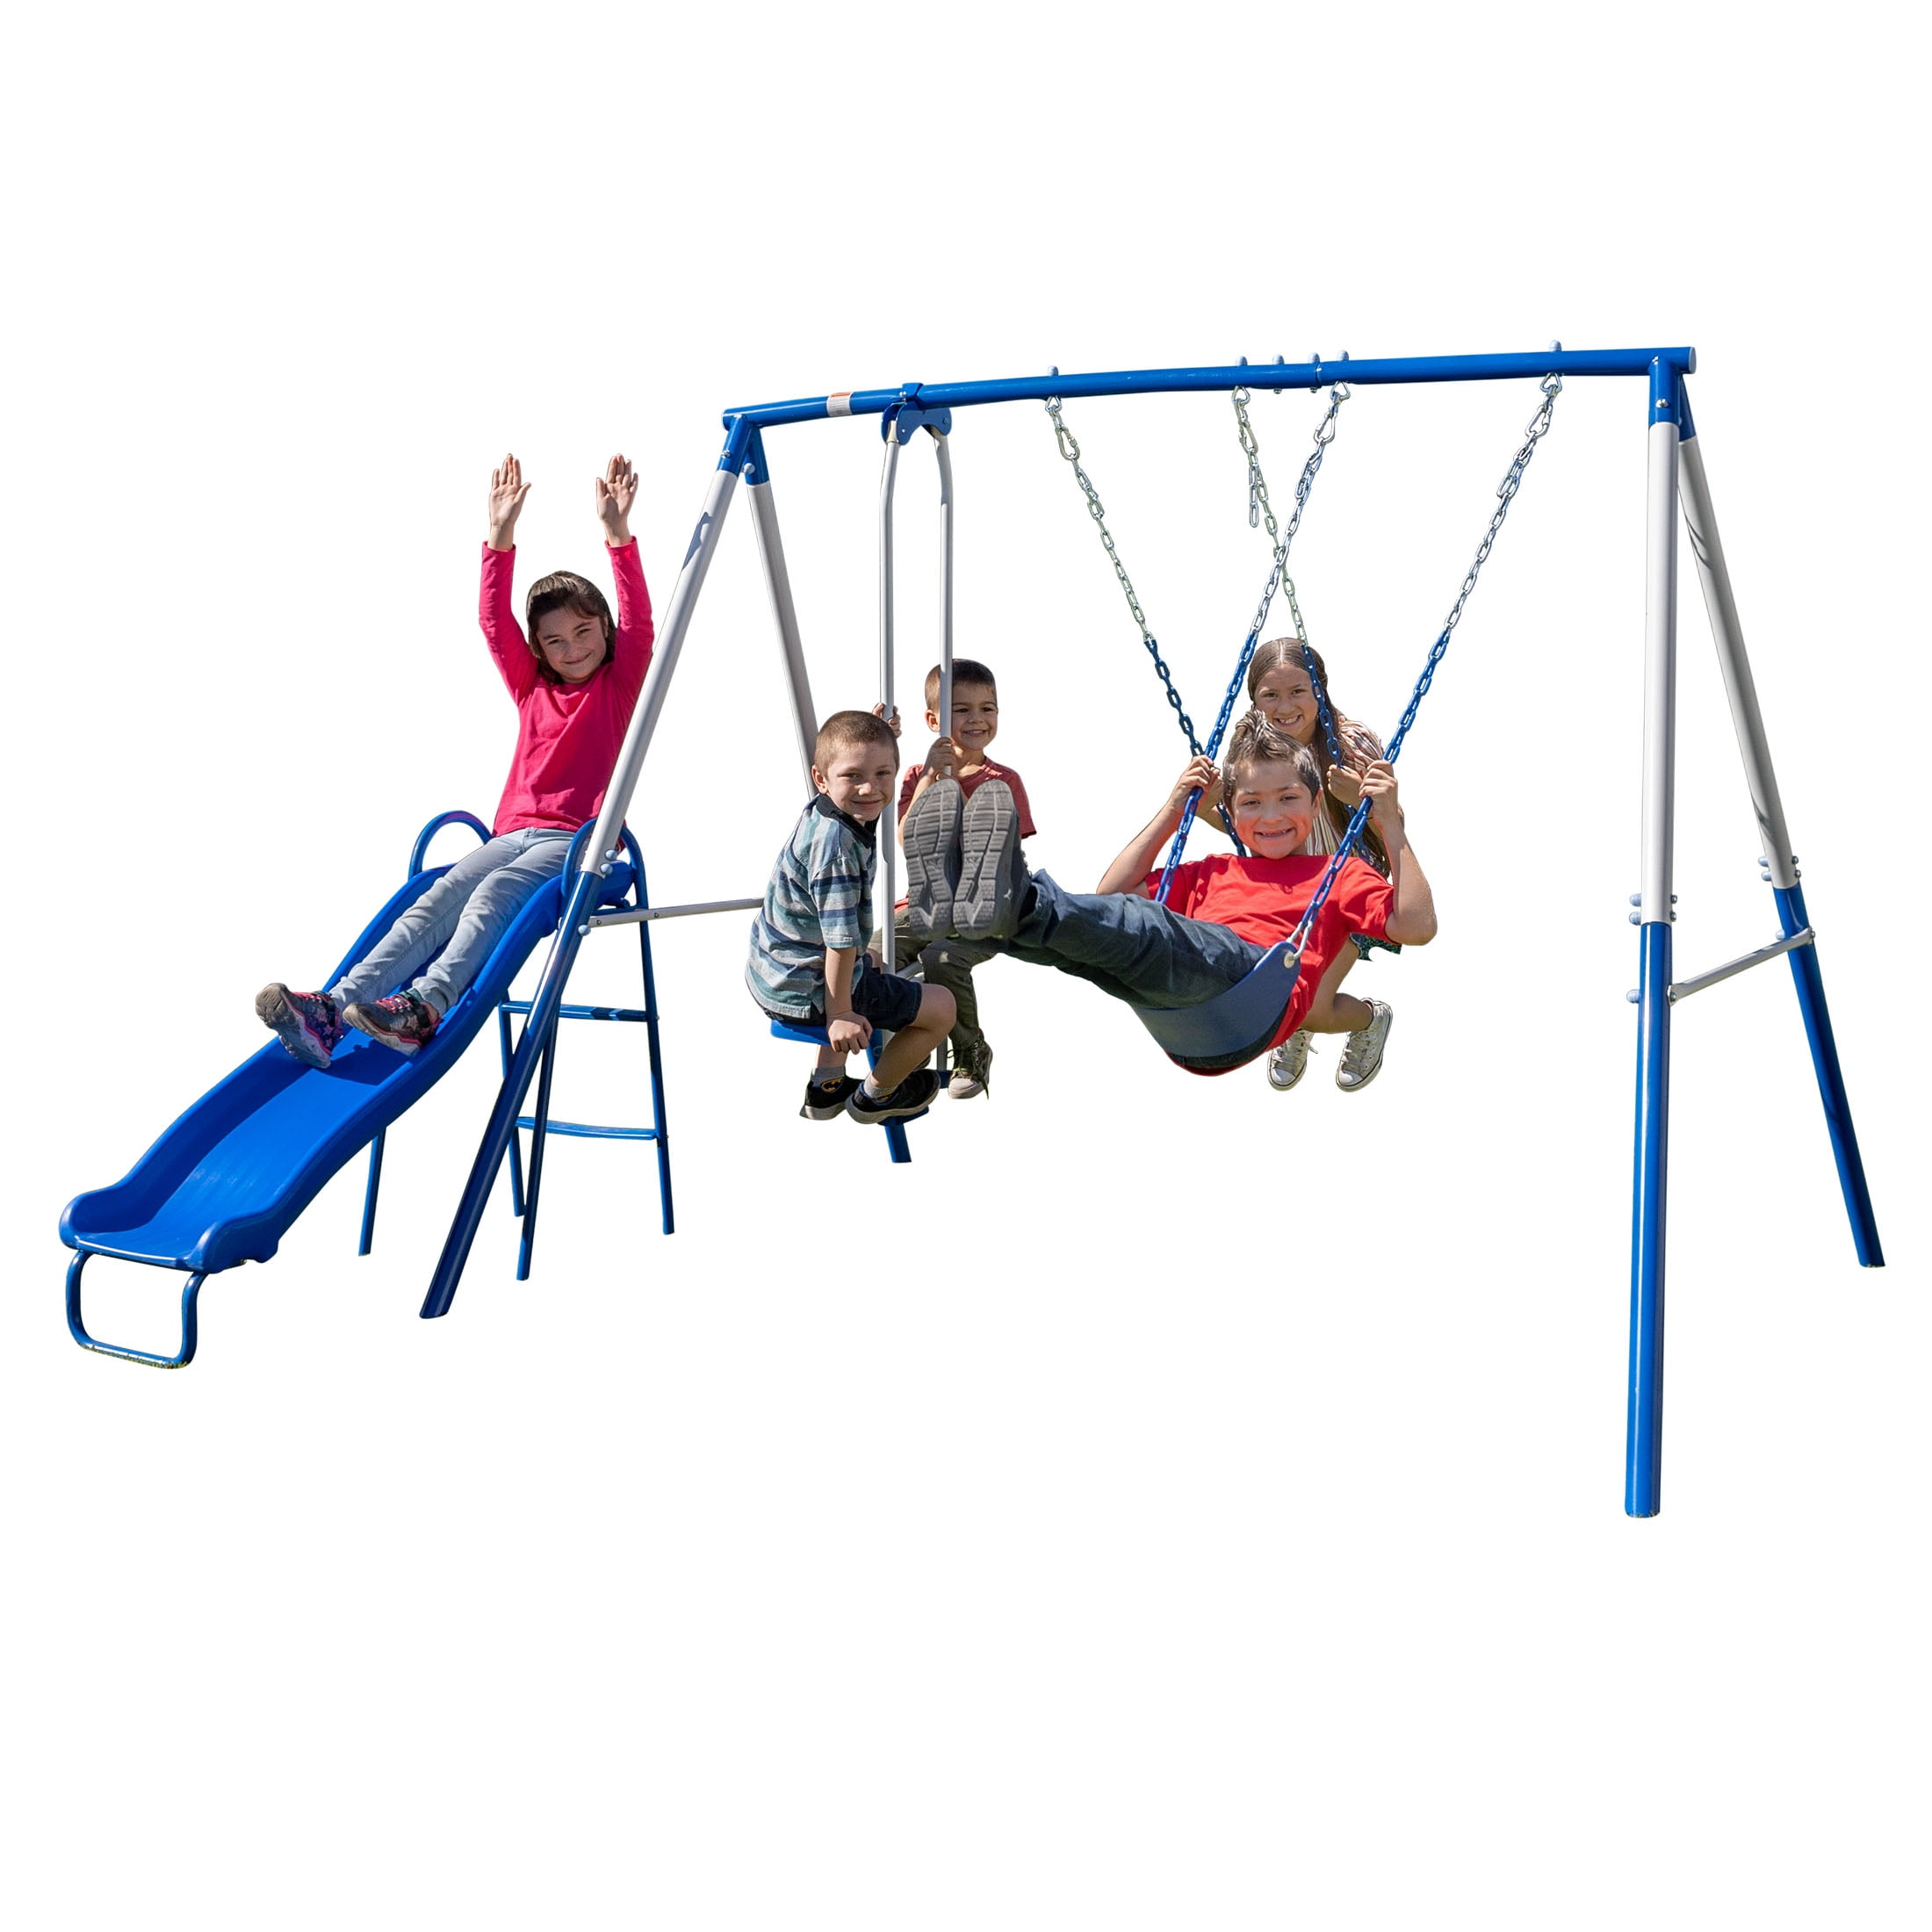 Sportspower Double Swing Set  Glider for Kids Garden Children's Outdoor Toy Home 